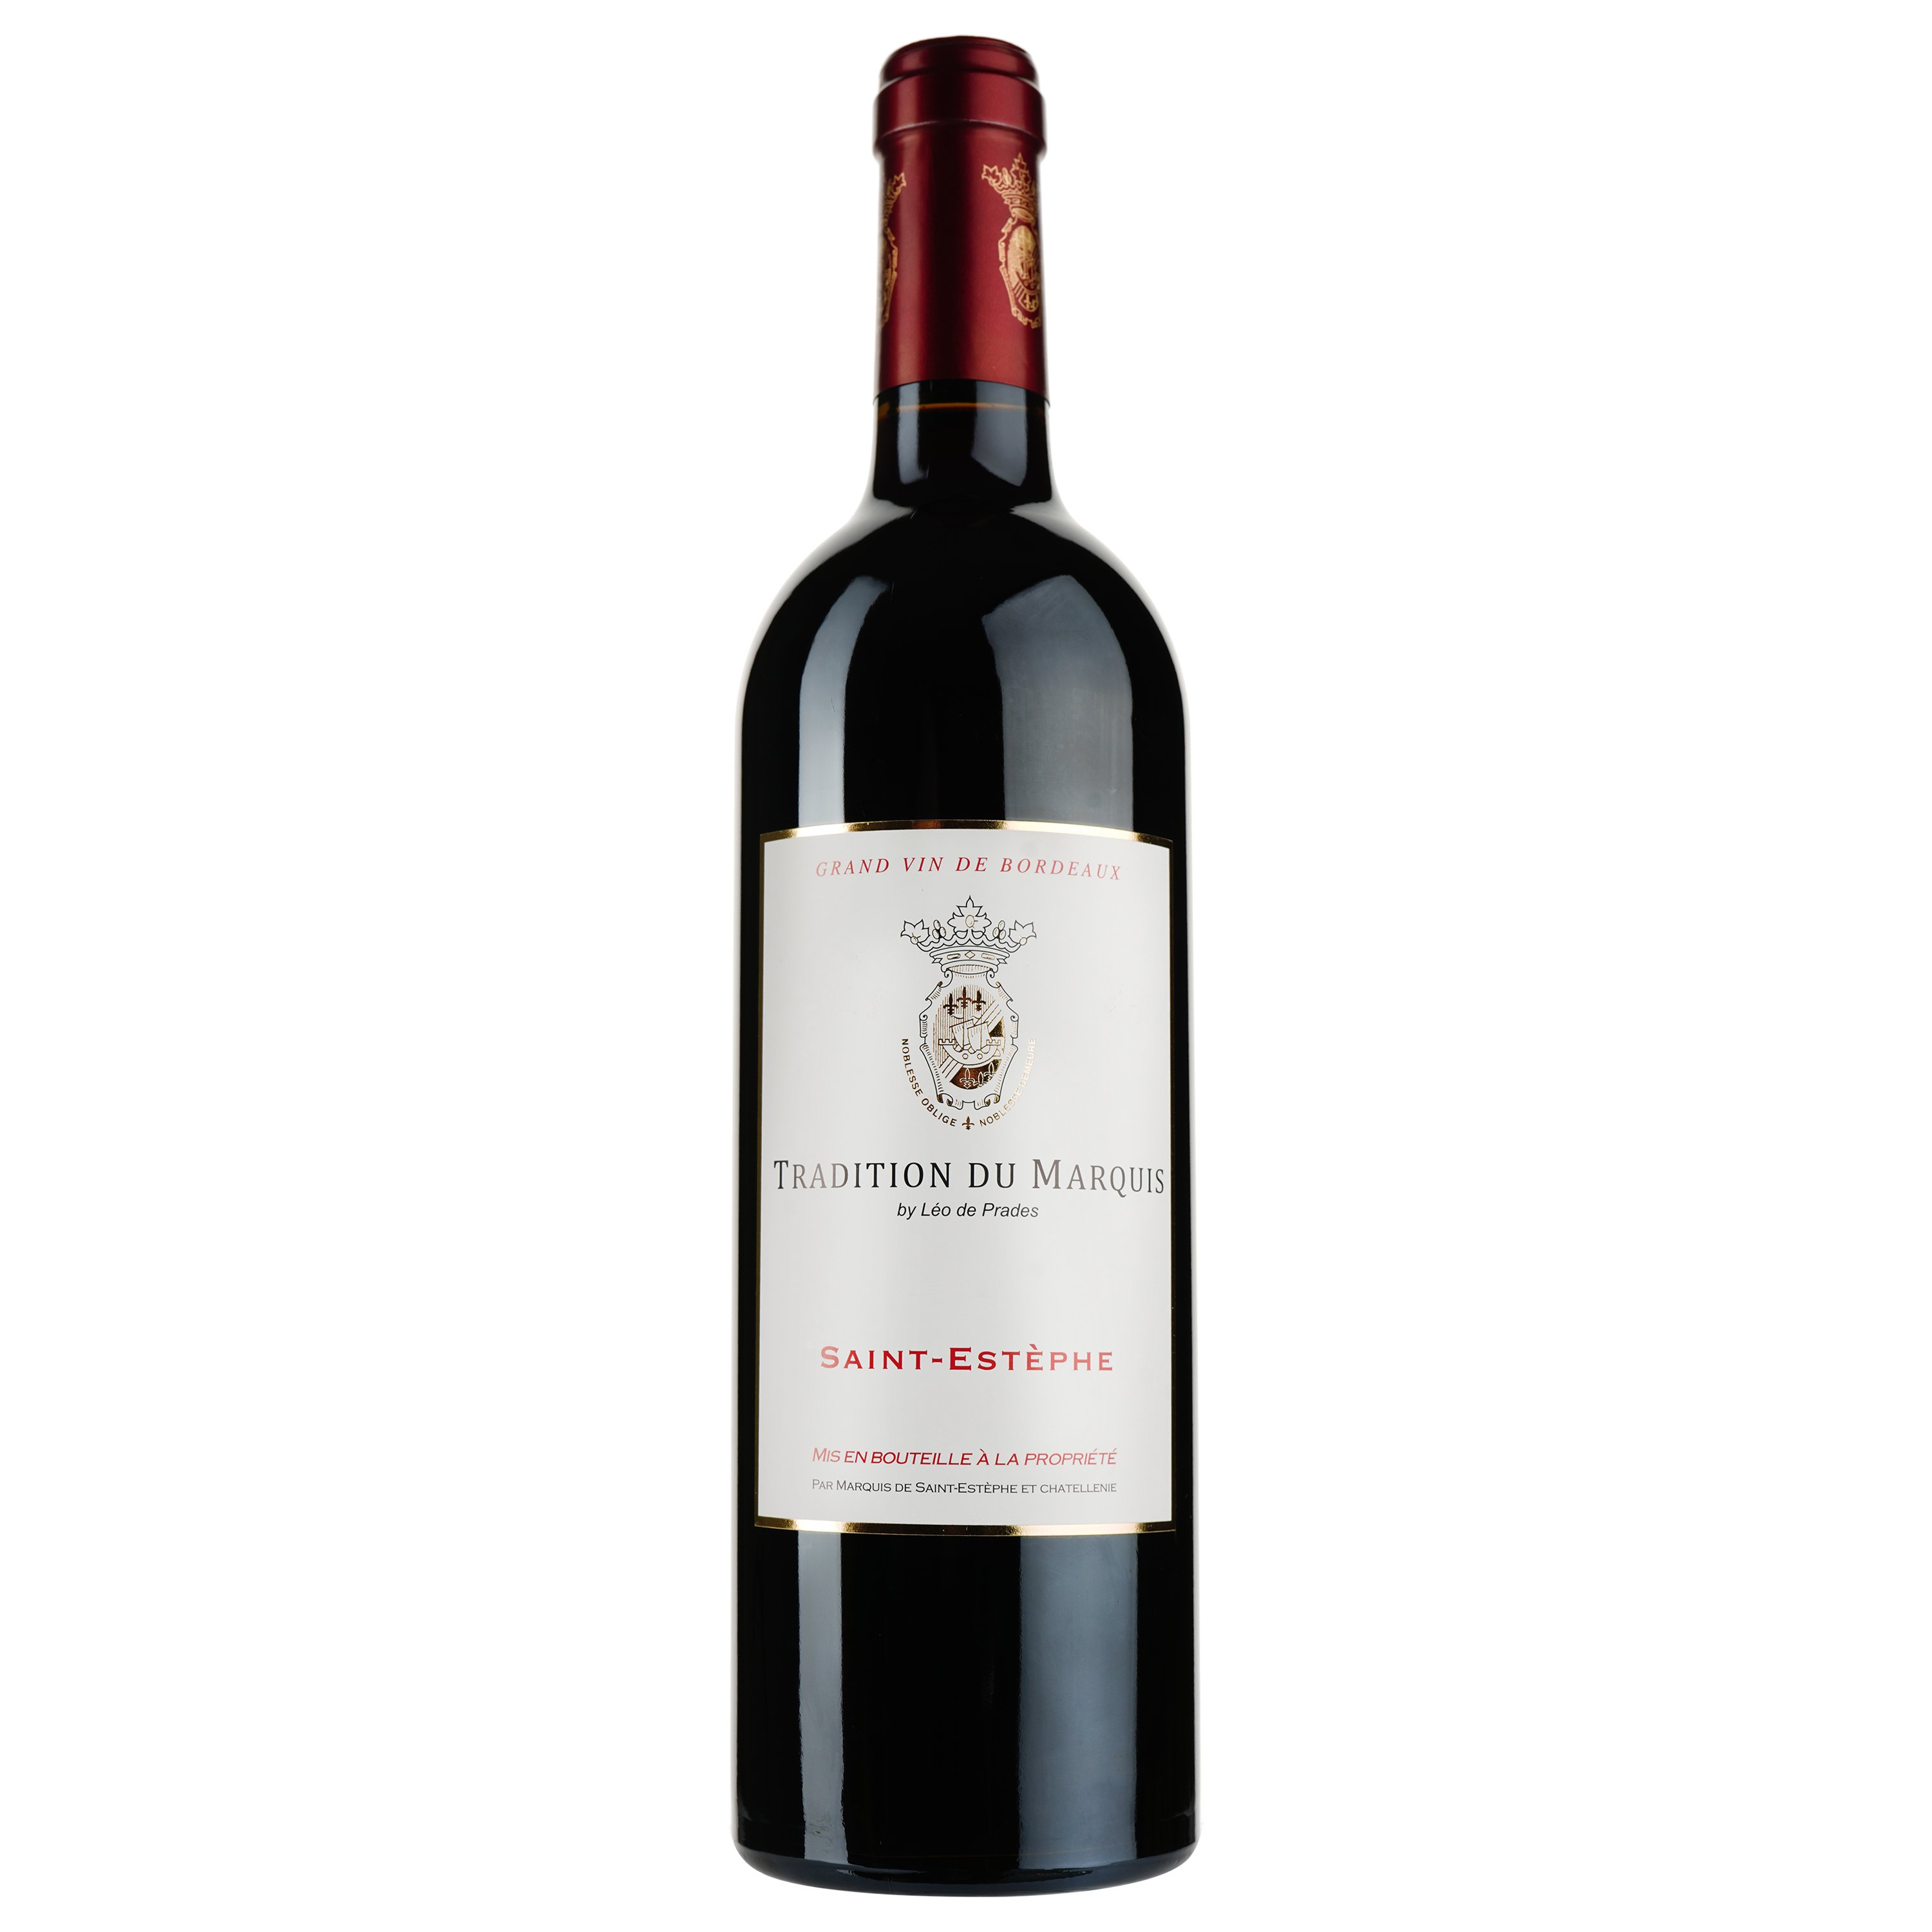 Вино Tradition du Marquis by Leo de Prades AOP Saint-Estephe 2017, красное, сухое, 0,75 л - фото 1